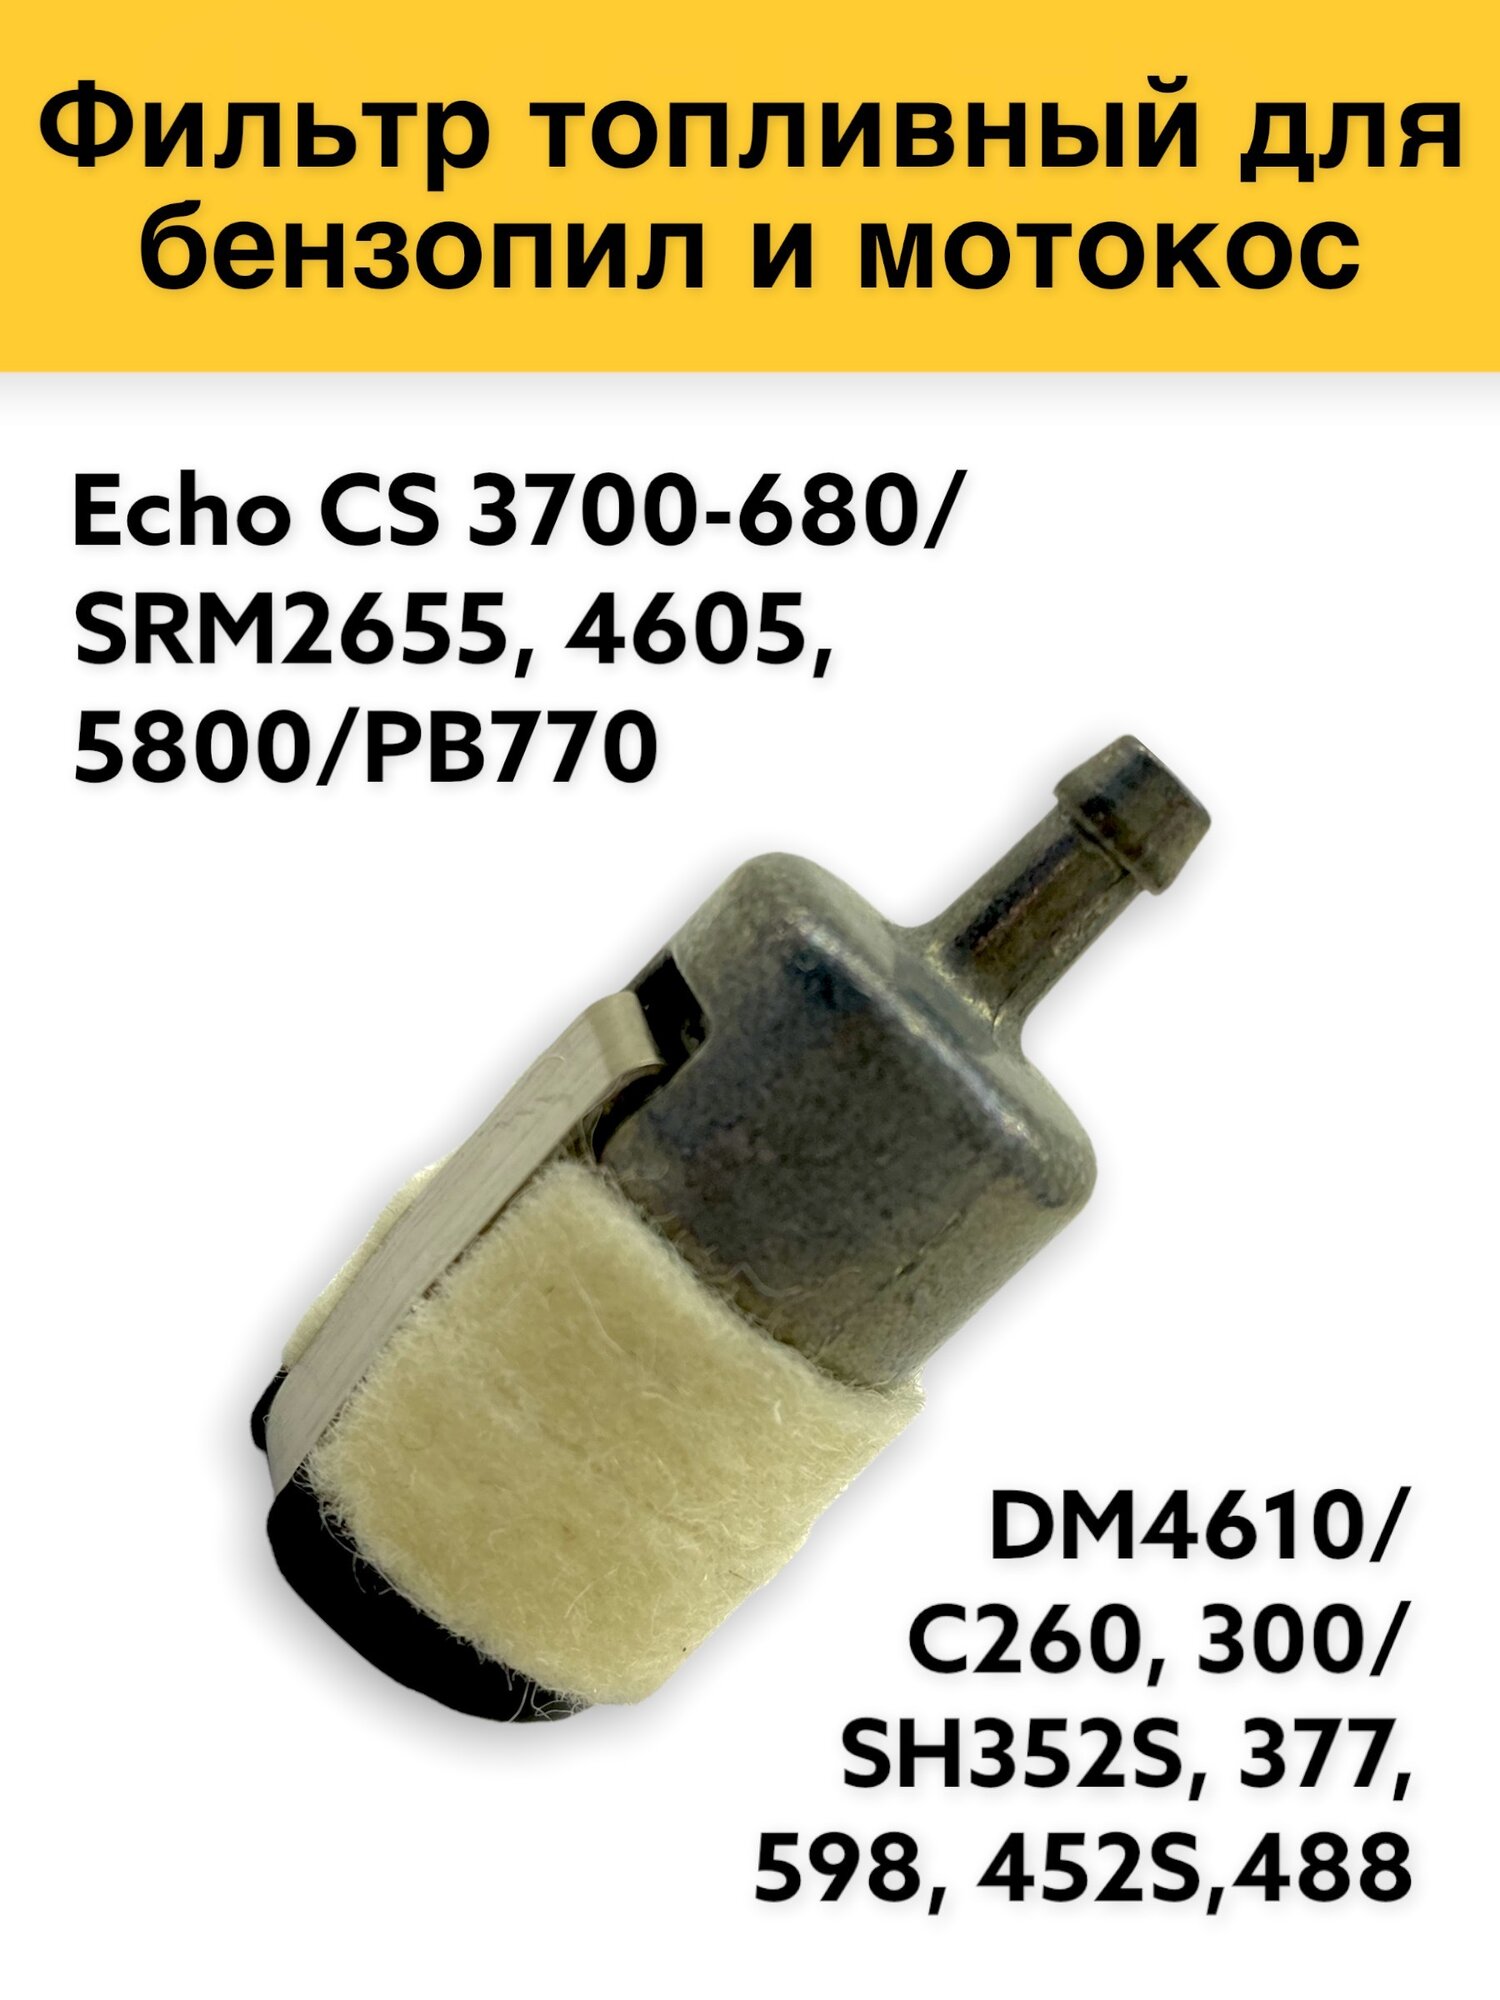 Фильтр топливный для бензопил и мотокос ECHO, CS3700-680/SRM2655,4605,5800/РВ770/DM4610